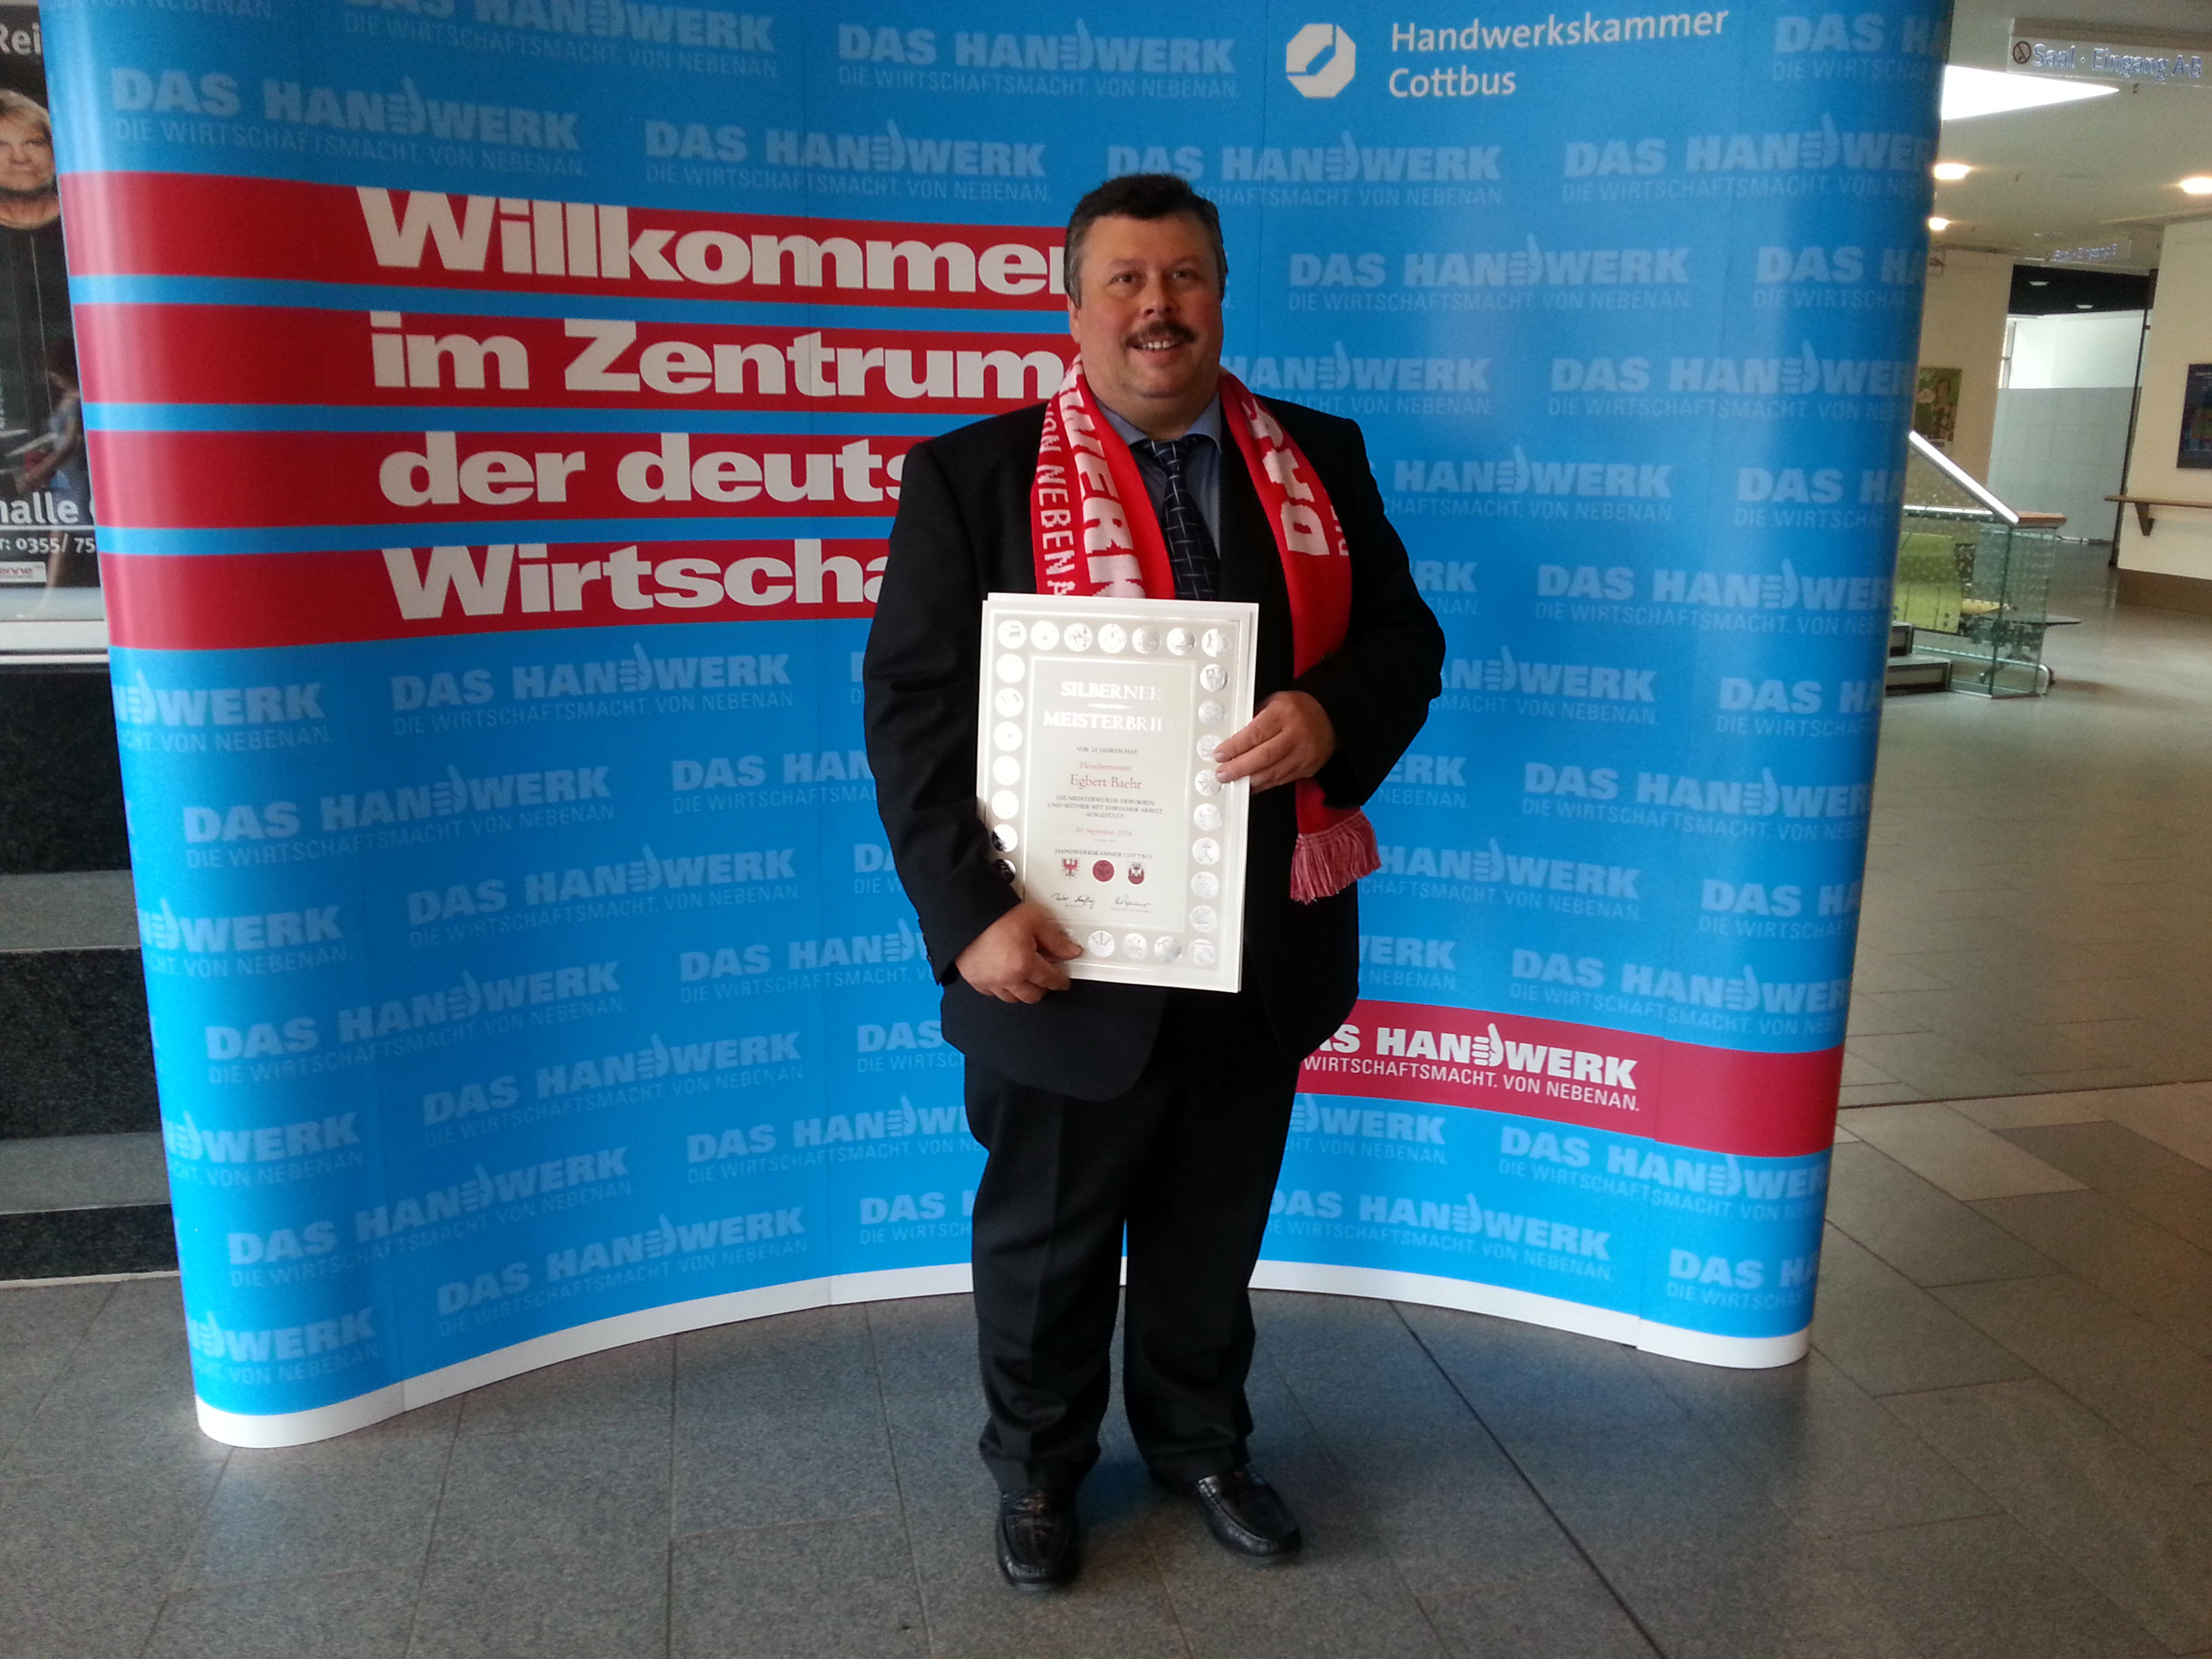 Urkunde zum 25 jährigen Meisterjubiläum 2015 in Cottbus